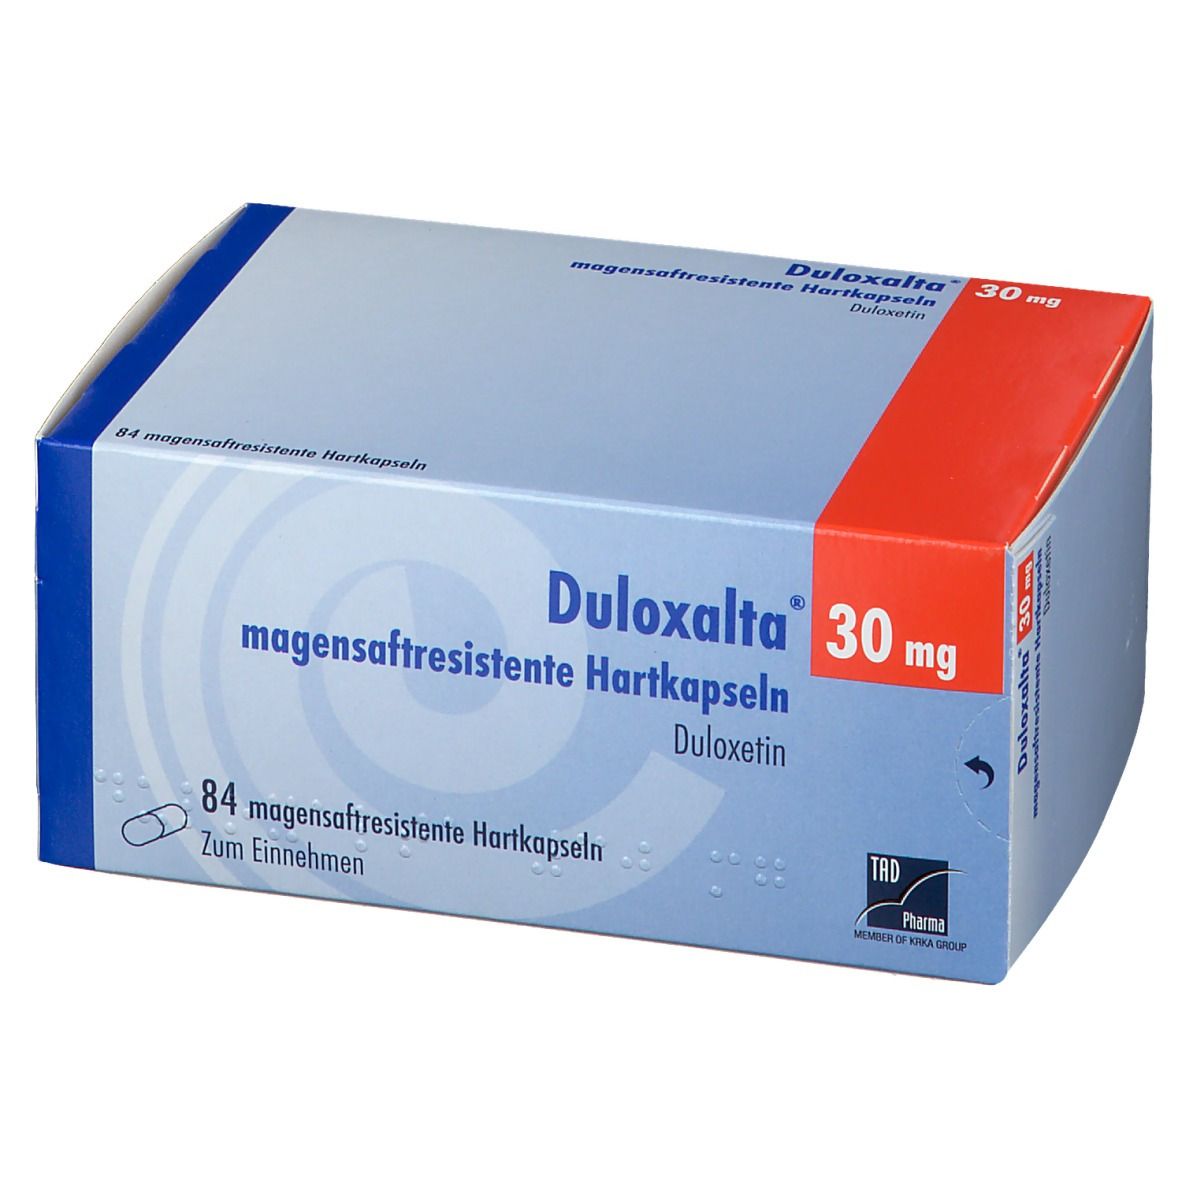 Duloxalta® 30 mg